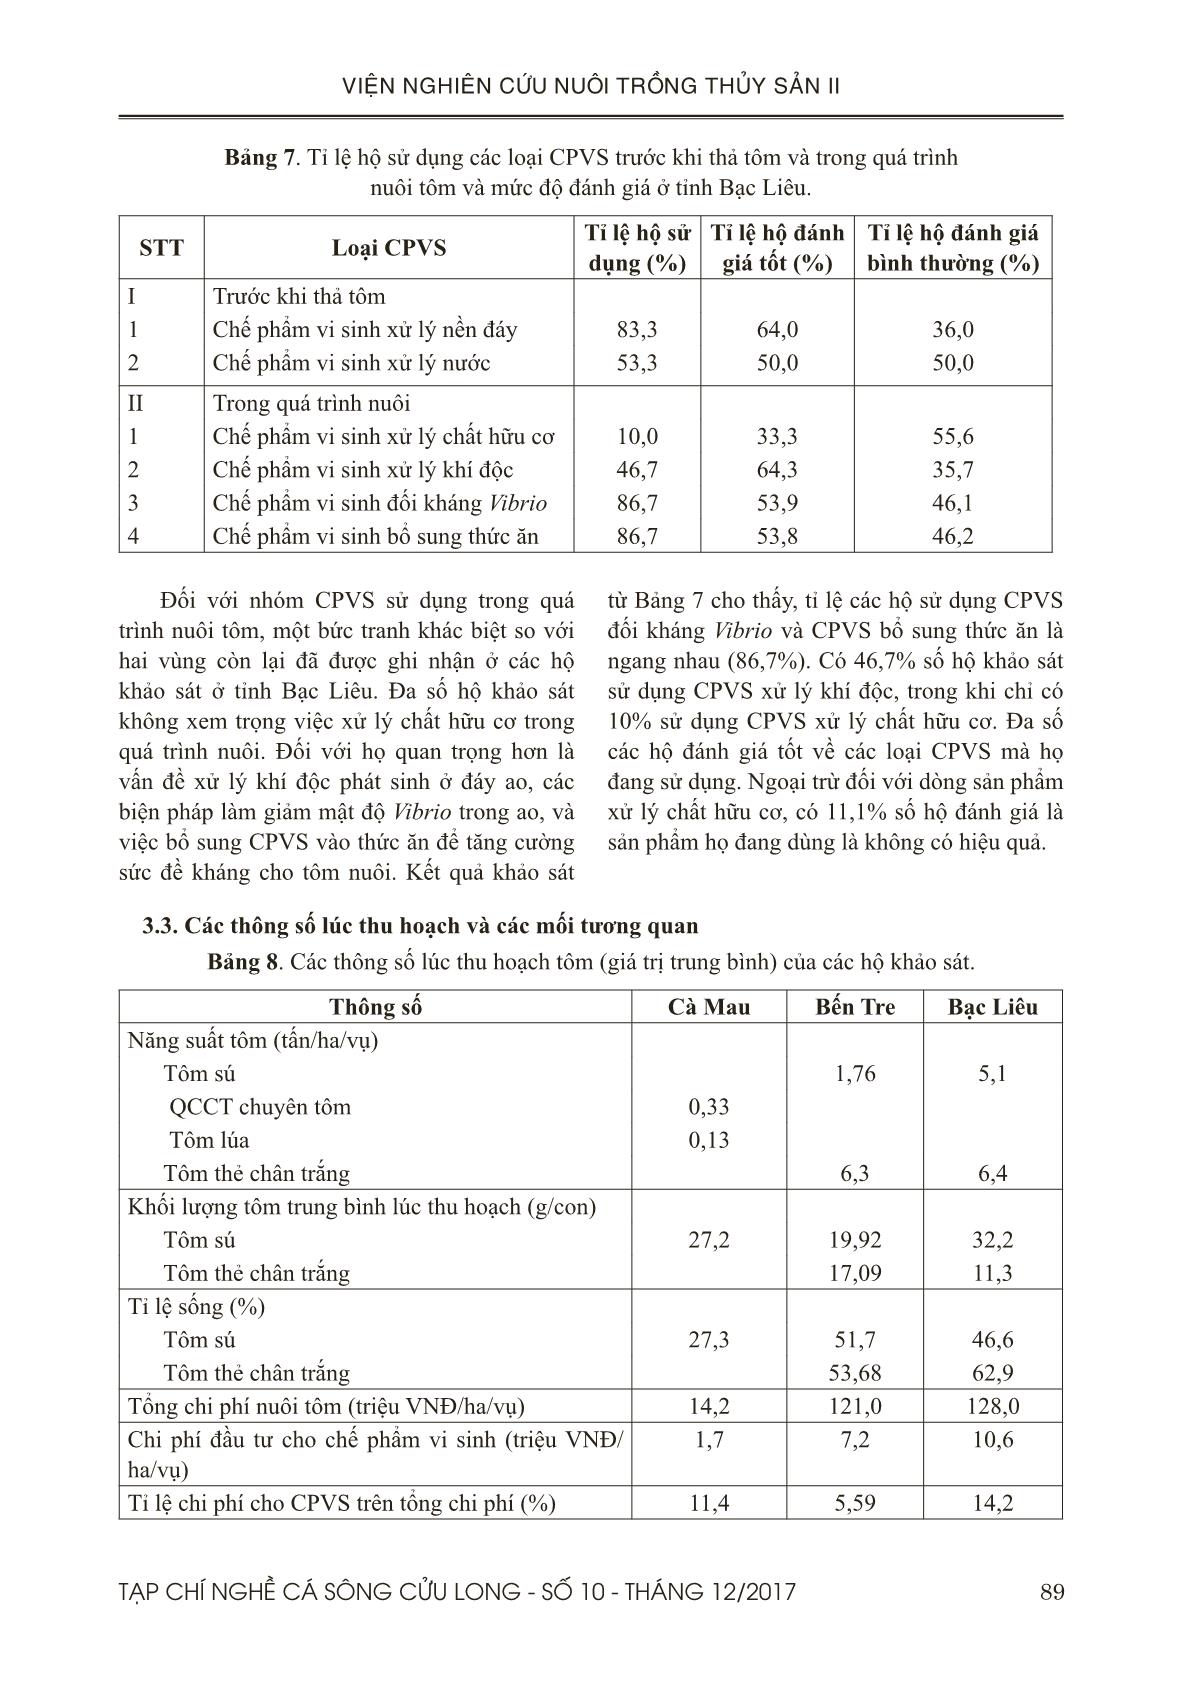 Đánh giá tình hình sử dụng chế phẩm vi sinh trong nuôi tôm ở đồng bằng sông Cửu Long trang 7